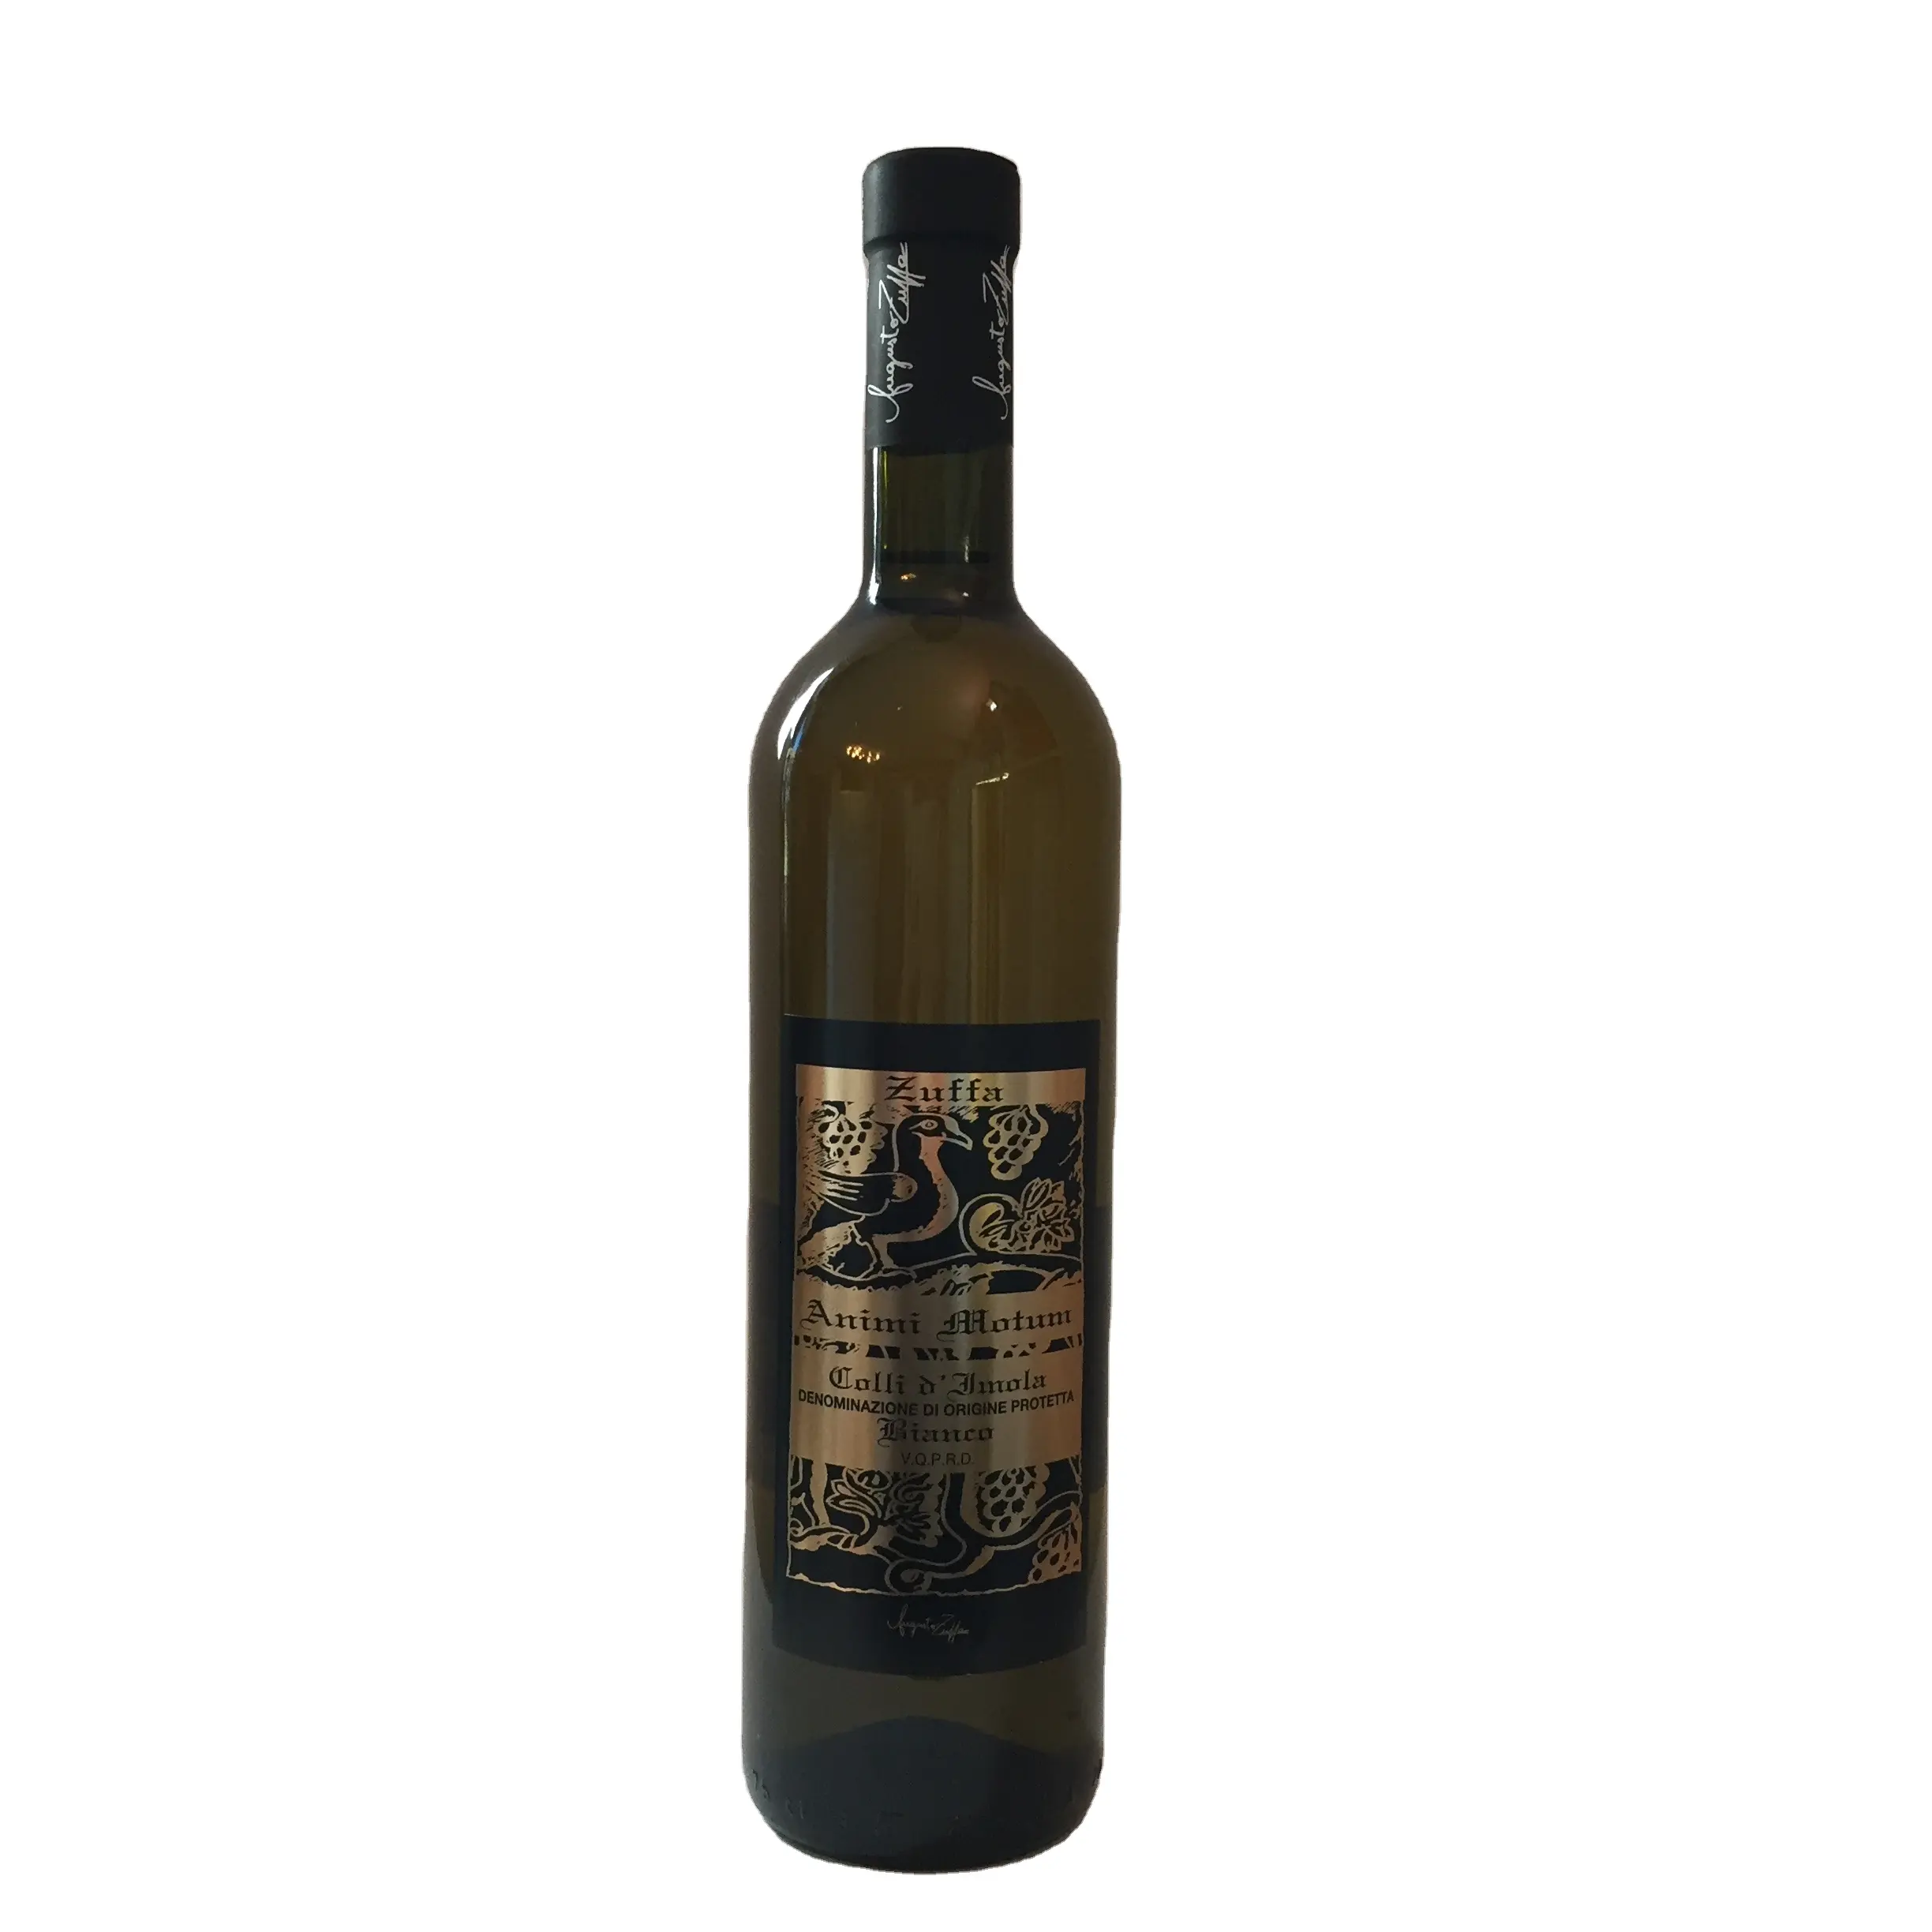 High Quality Animi Motum Italian Organic White wine Protected Designation of Origin Lt 0,75